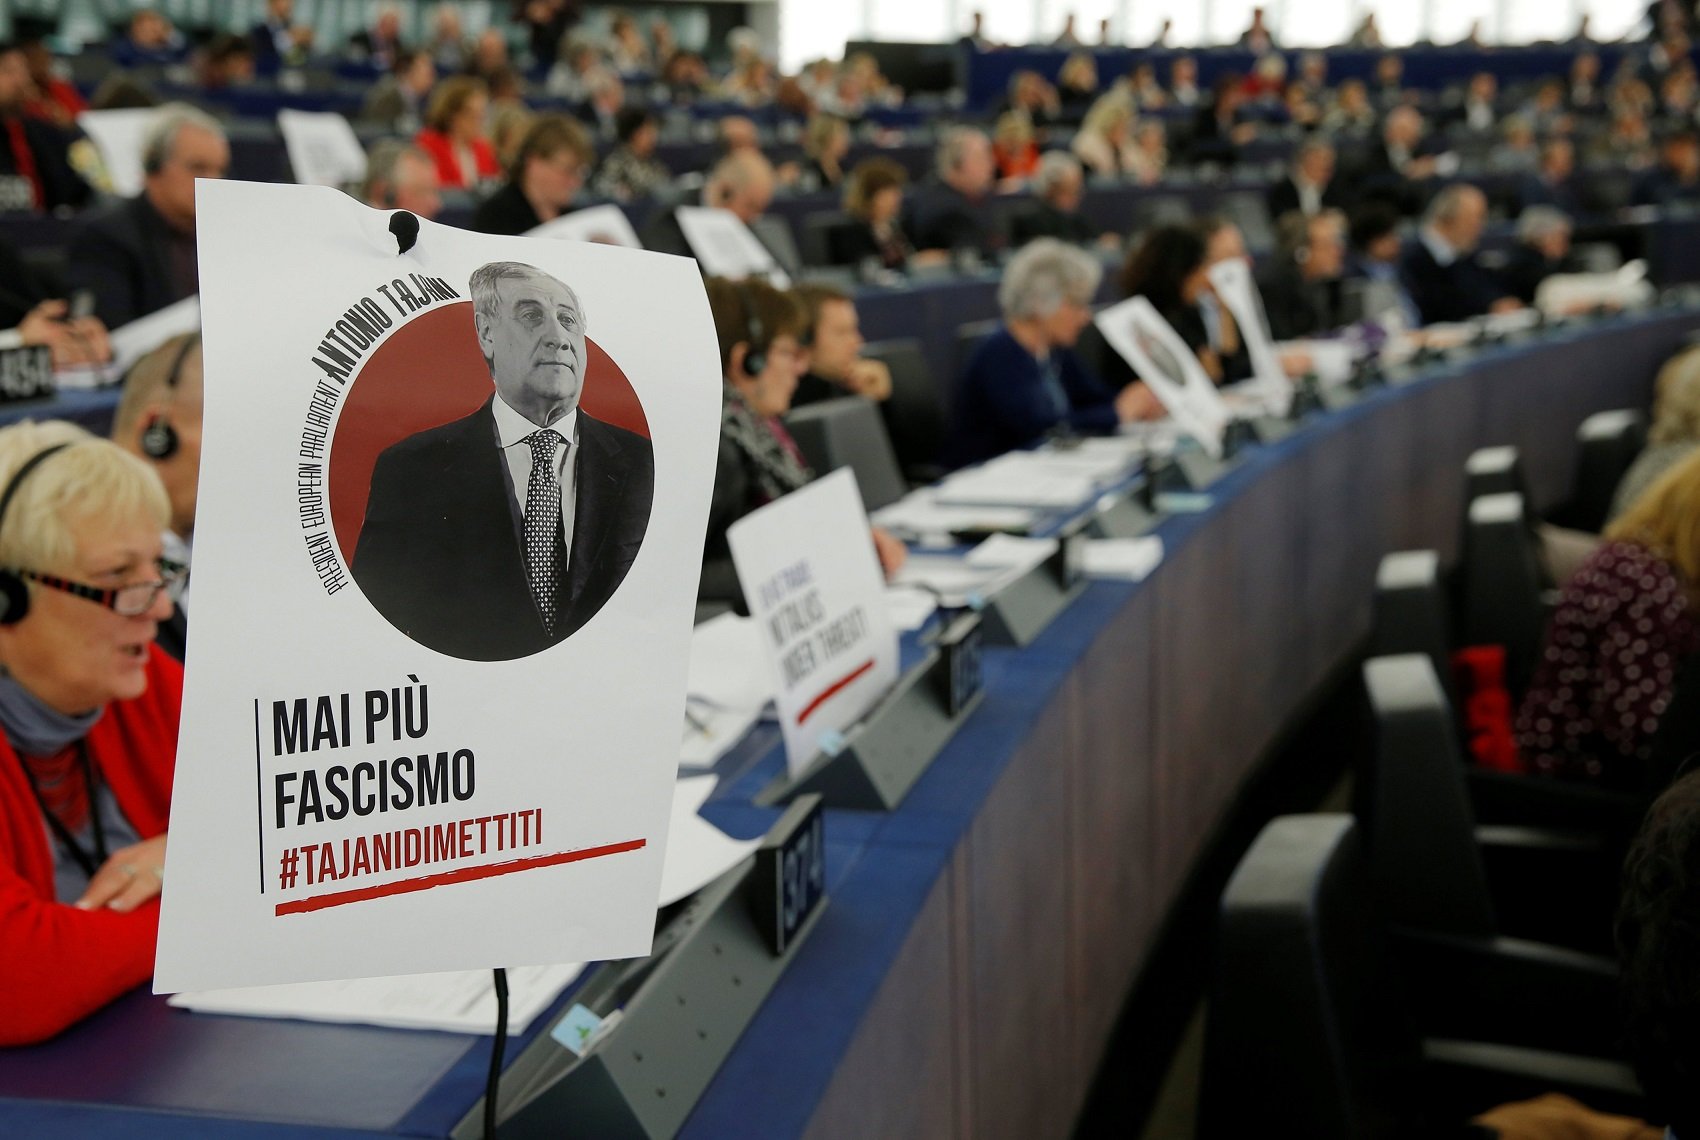 Collen Tajani per les declaracions sobre Mussolini